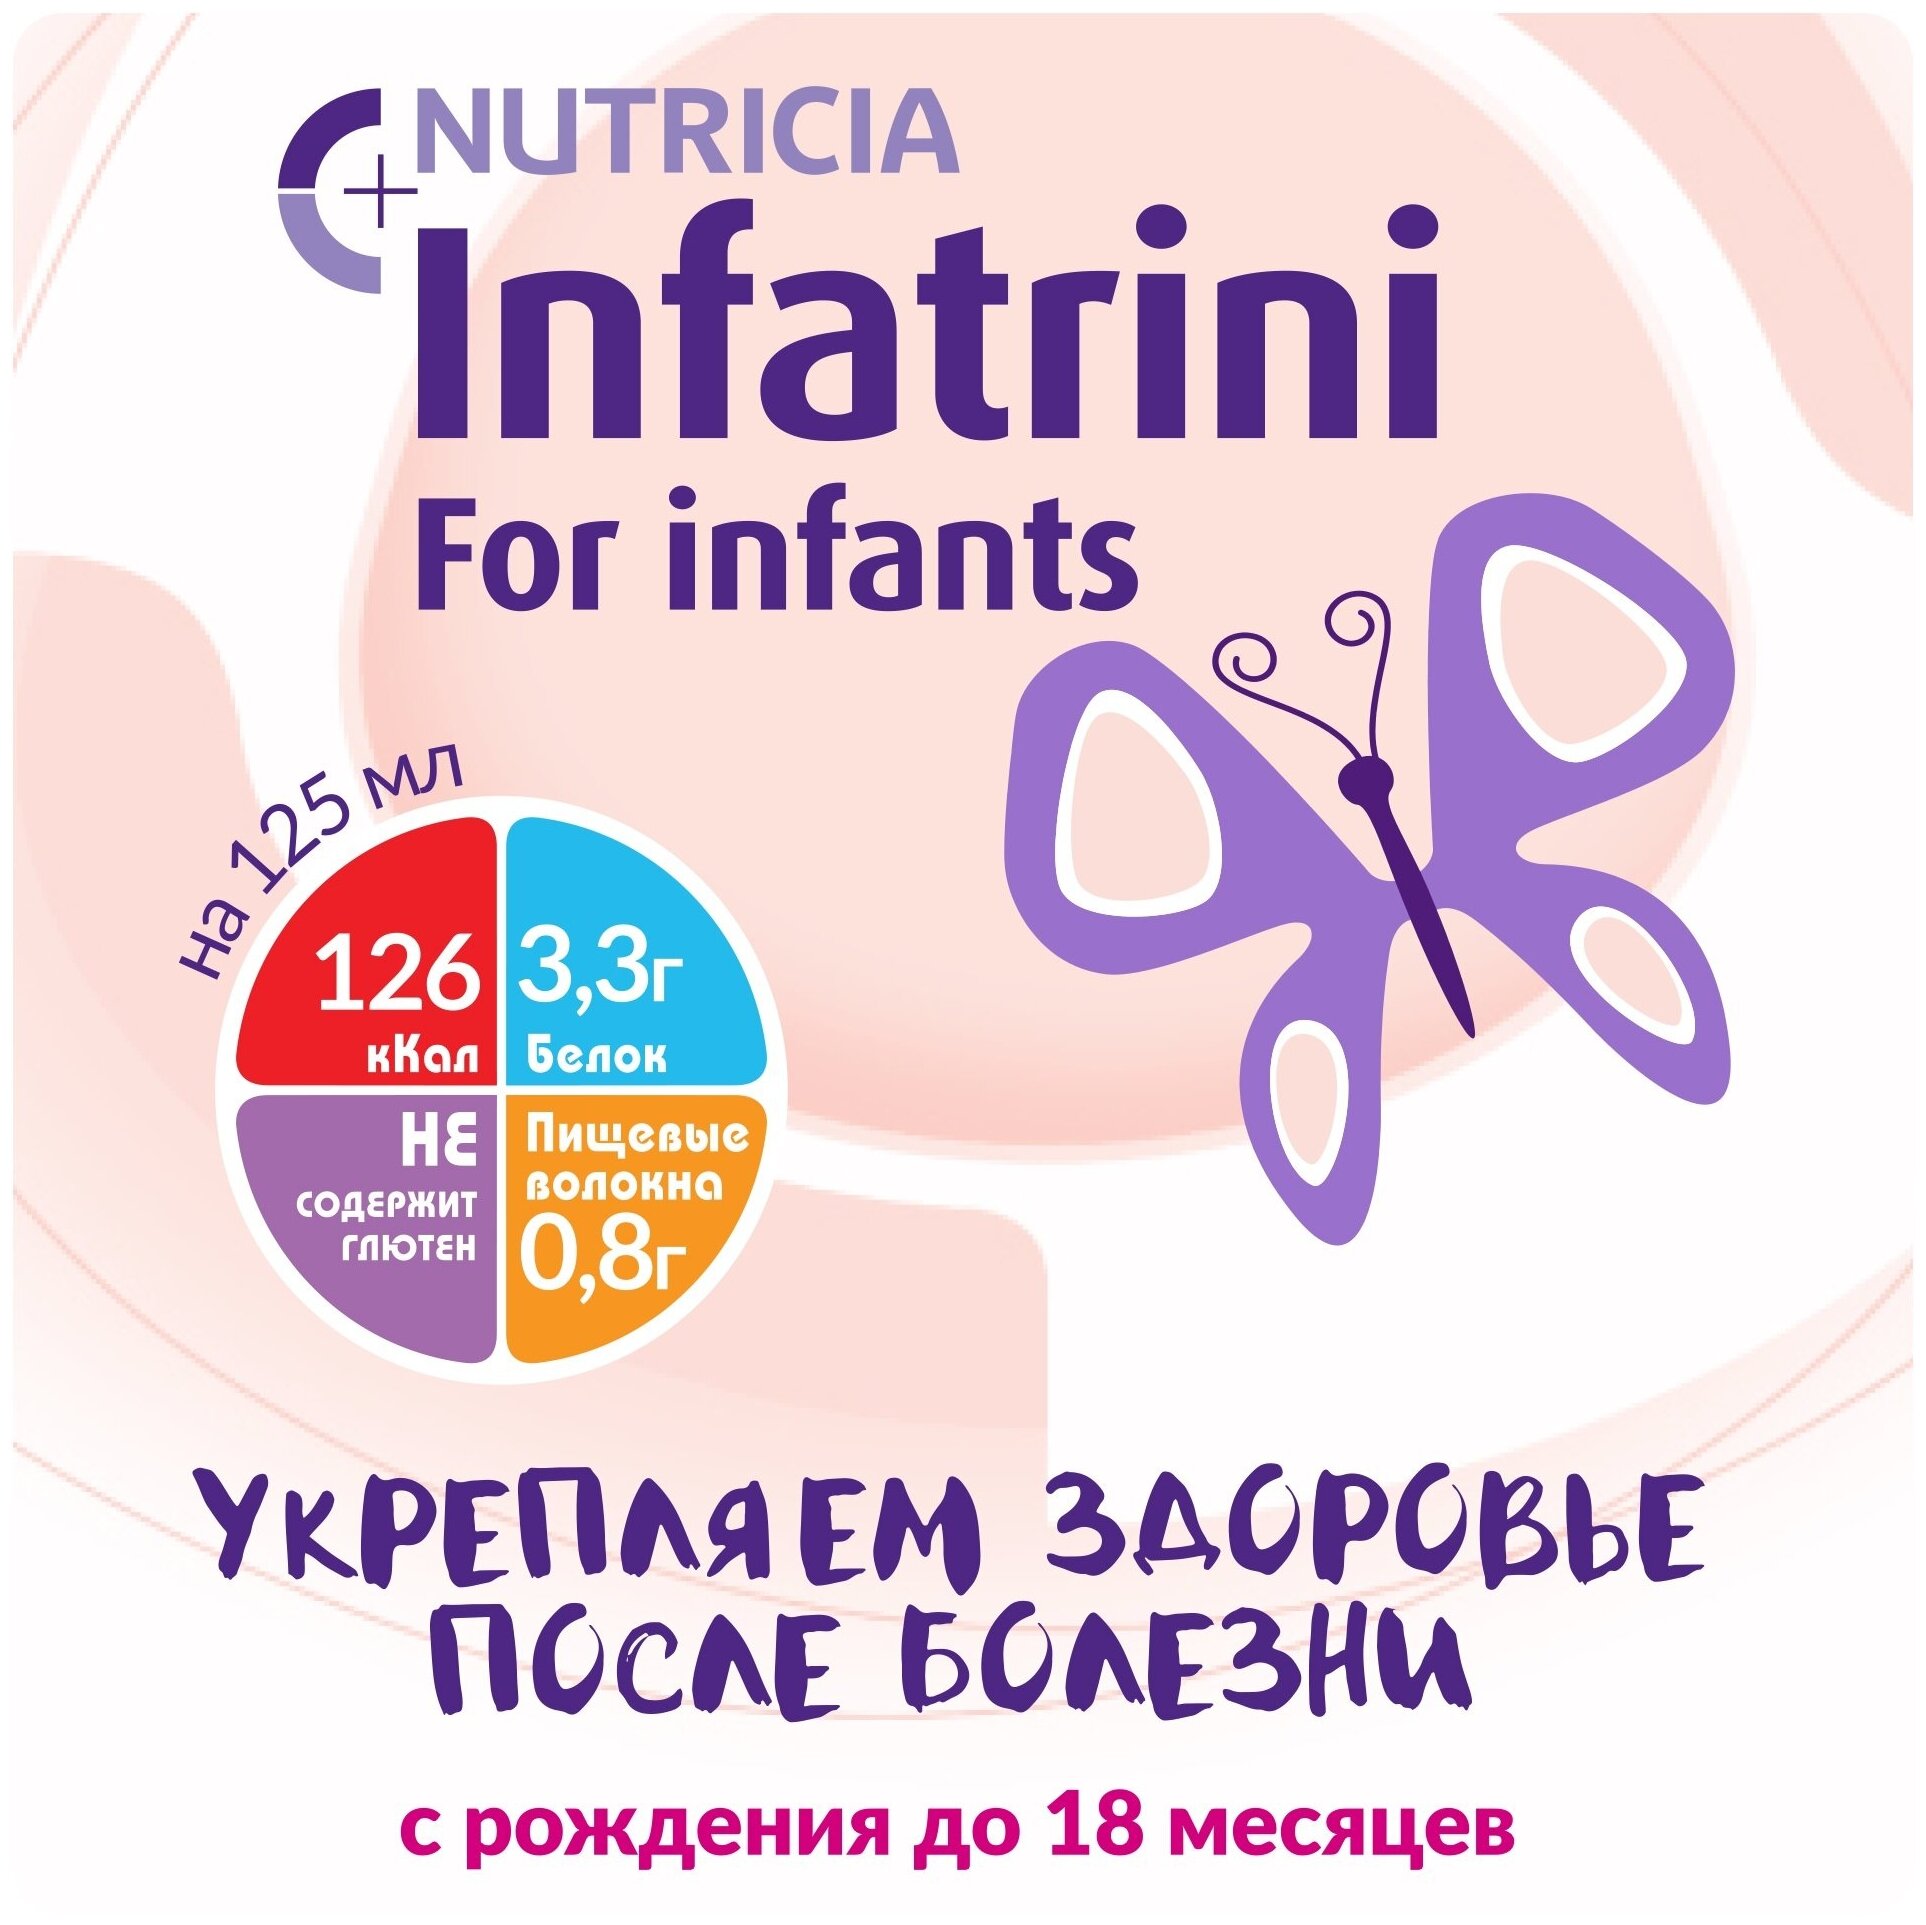 Смесь Nutricia (Нутриция) Infatrini жидкая для детей от 18 мес. 125 мл Nutricia N.V. - фото №2